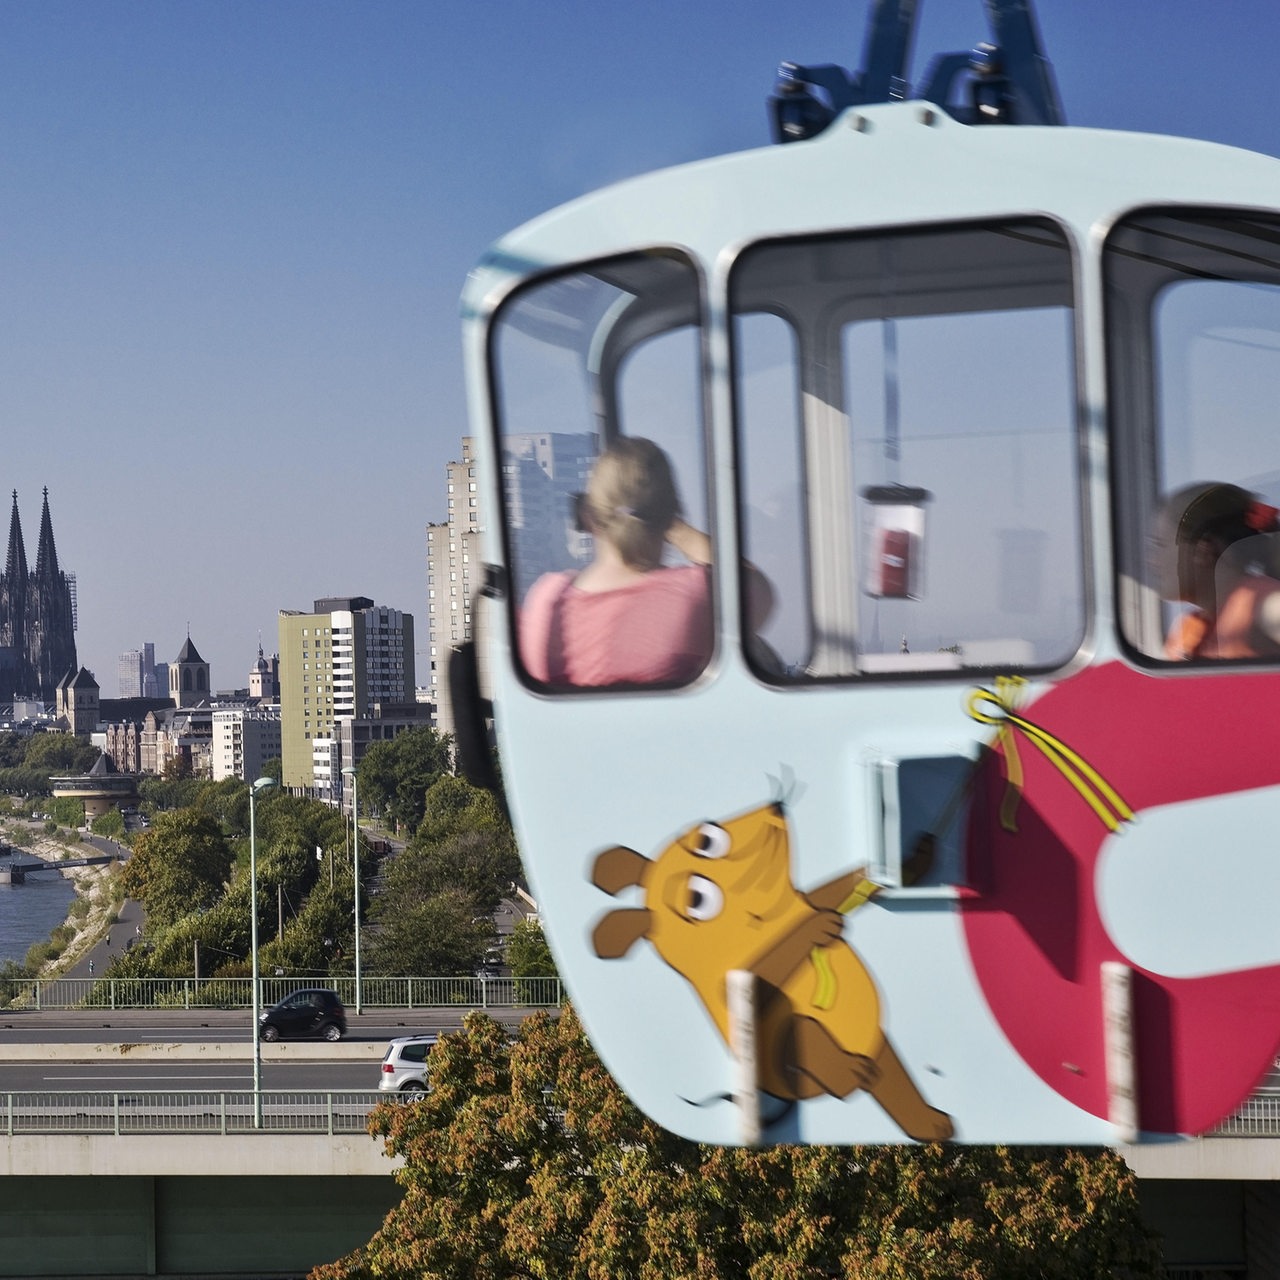 Gondel der Rheinbahn mit Blick auf den Kölner Dom